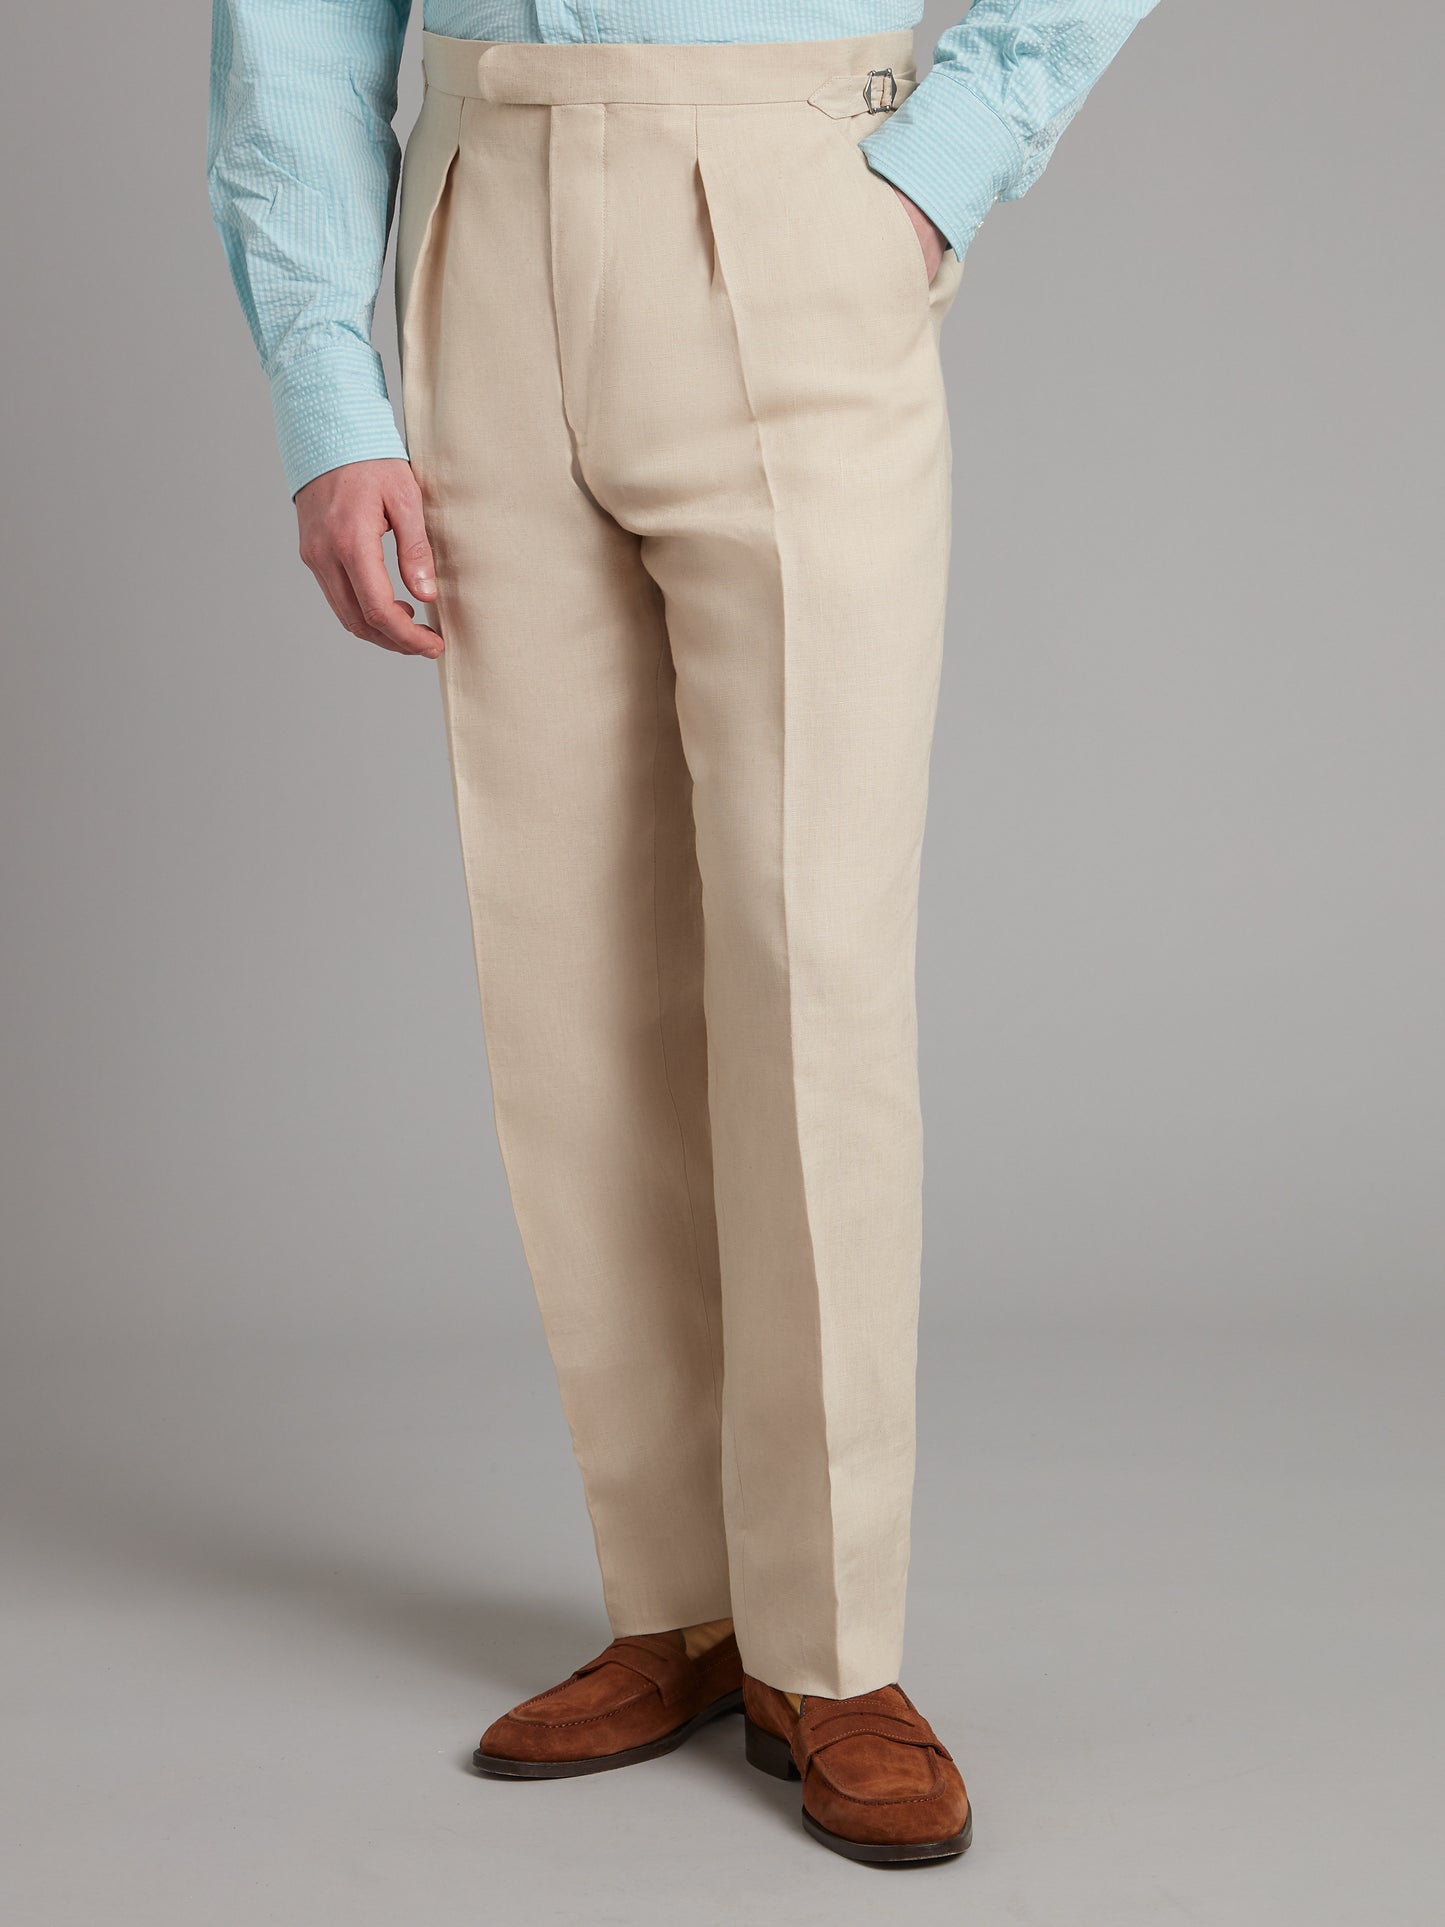 Cadogan Suit Linen - Stone